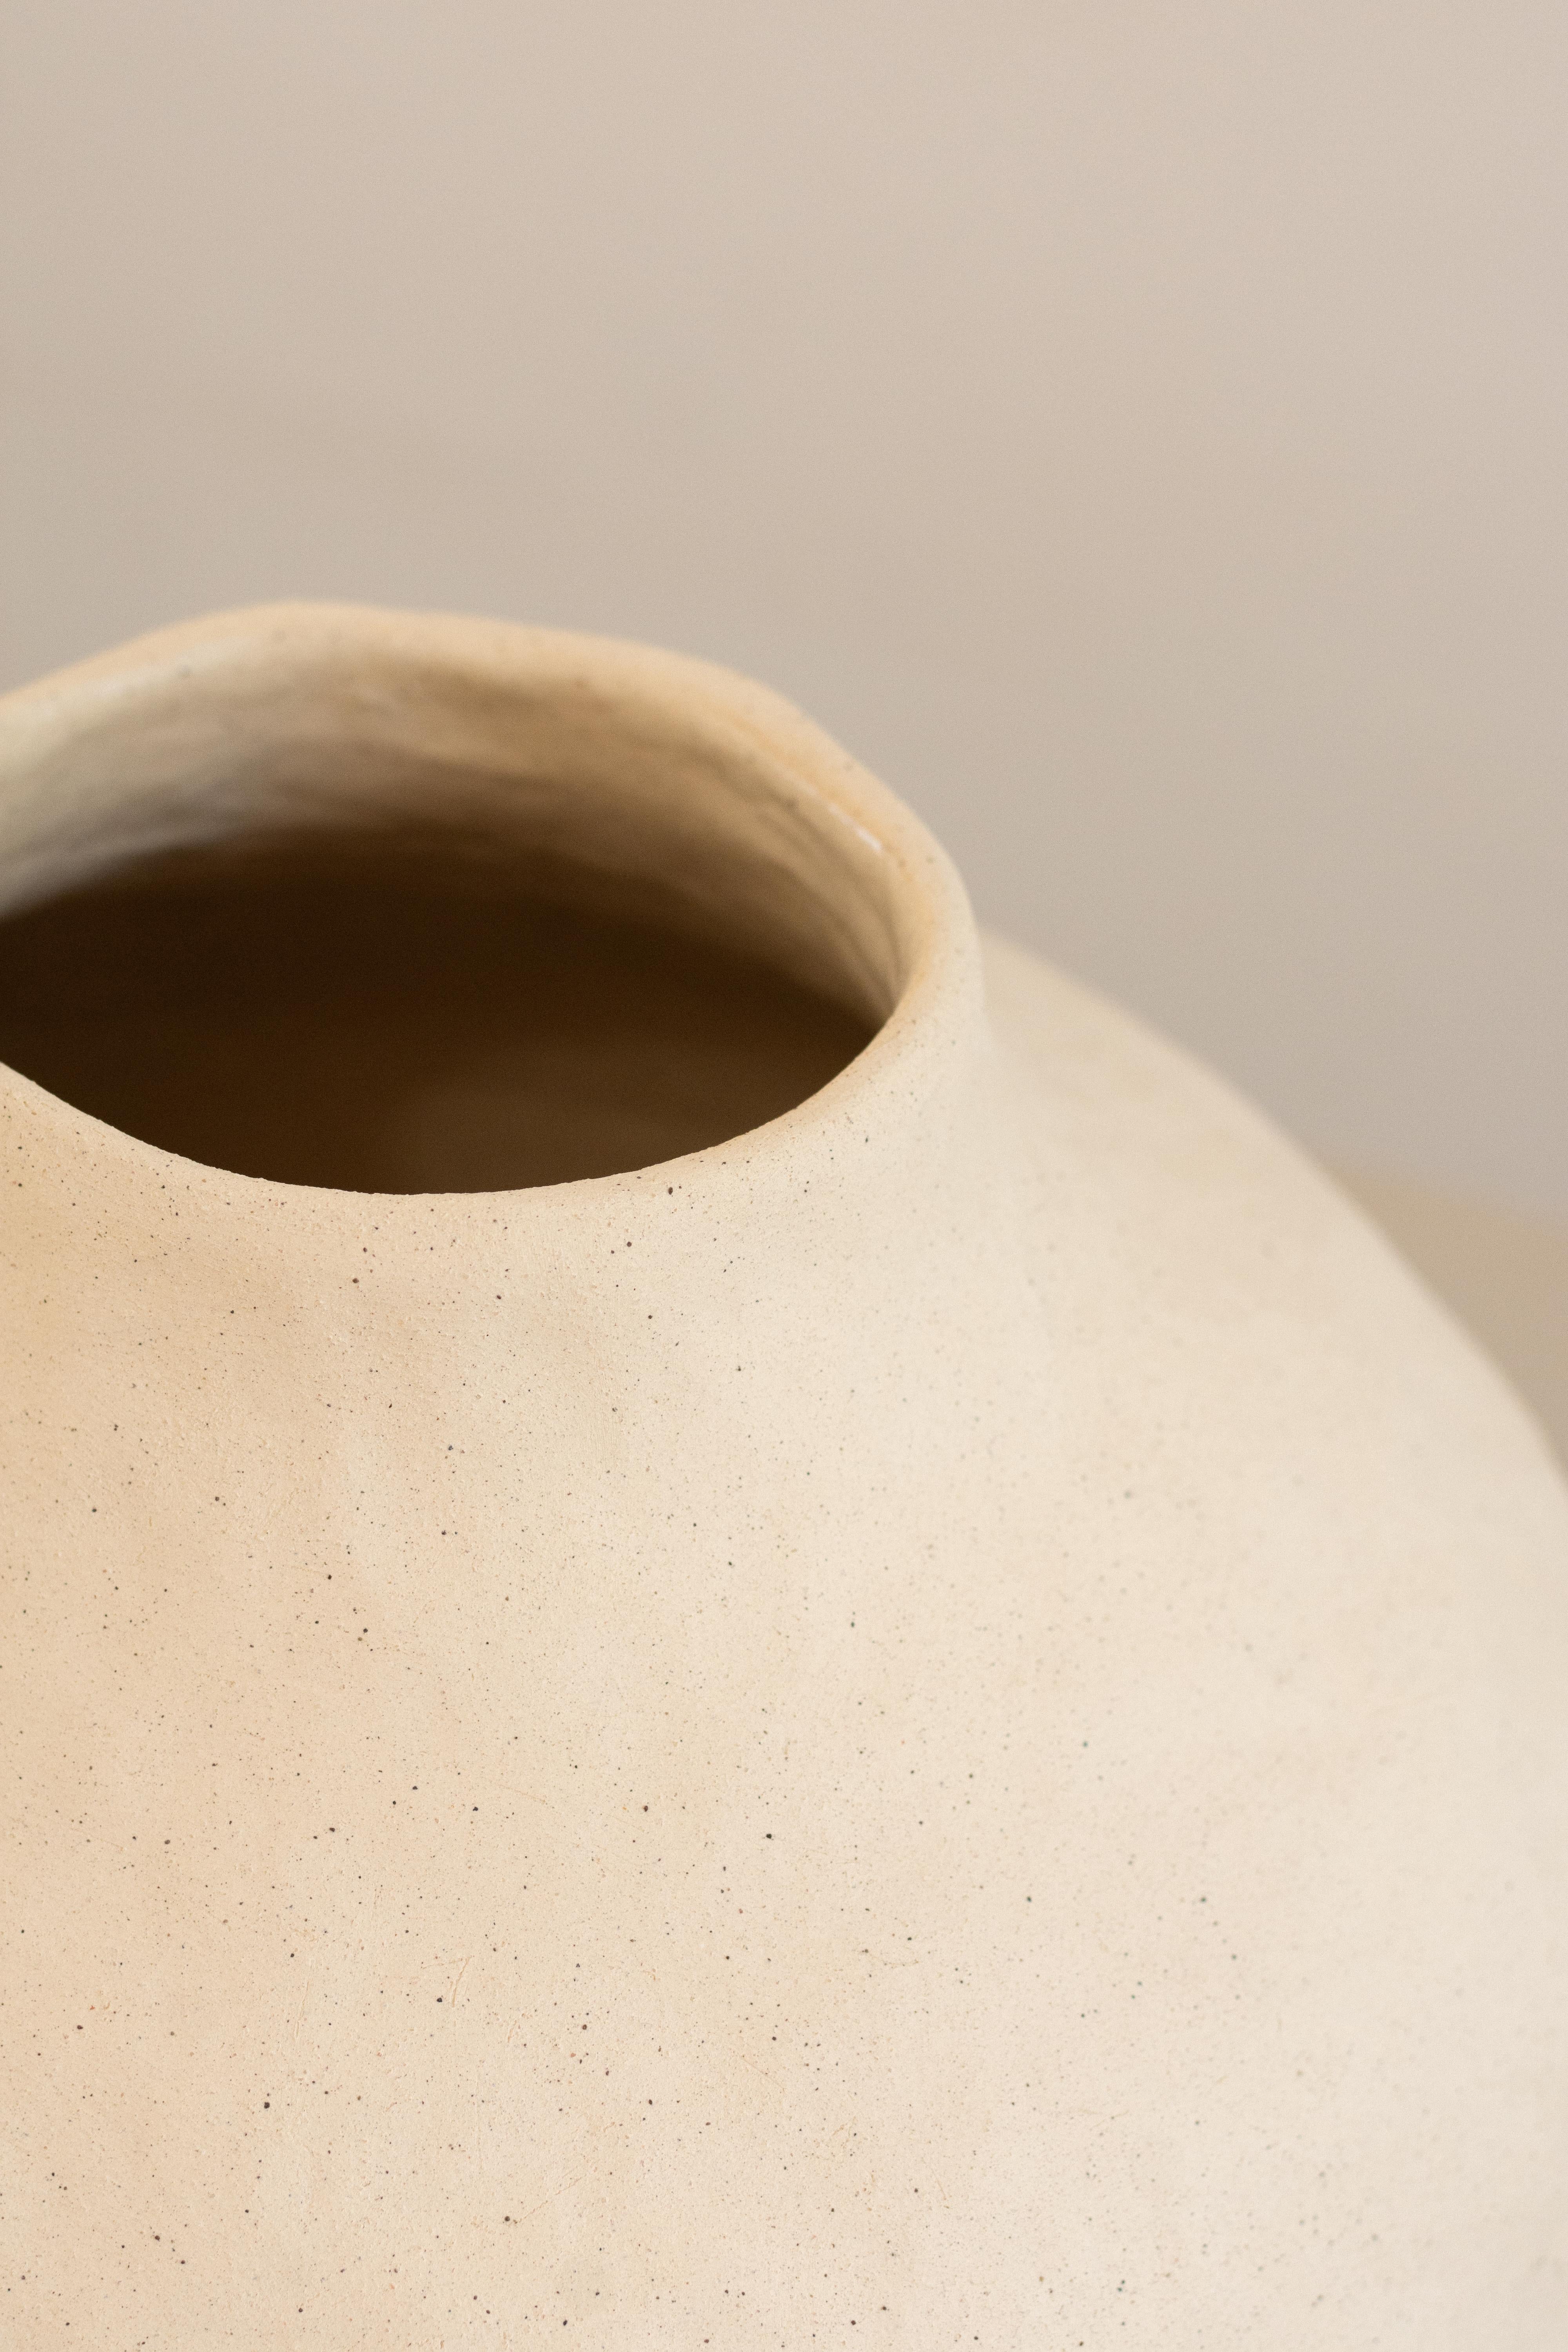 Brazilian handmade organic white ceramic vase  RUPA N.5 For Sale